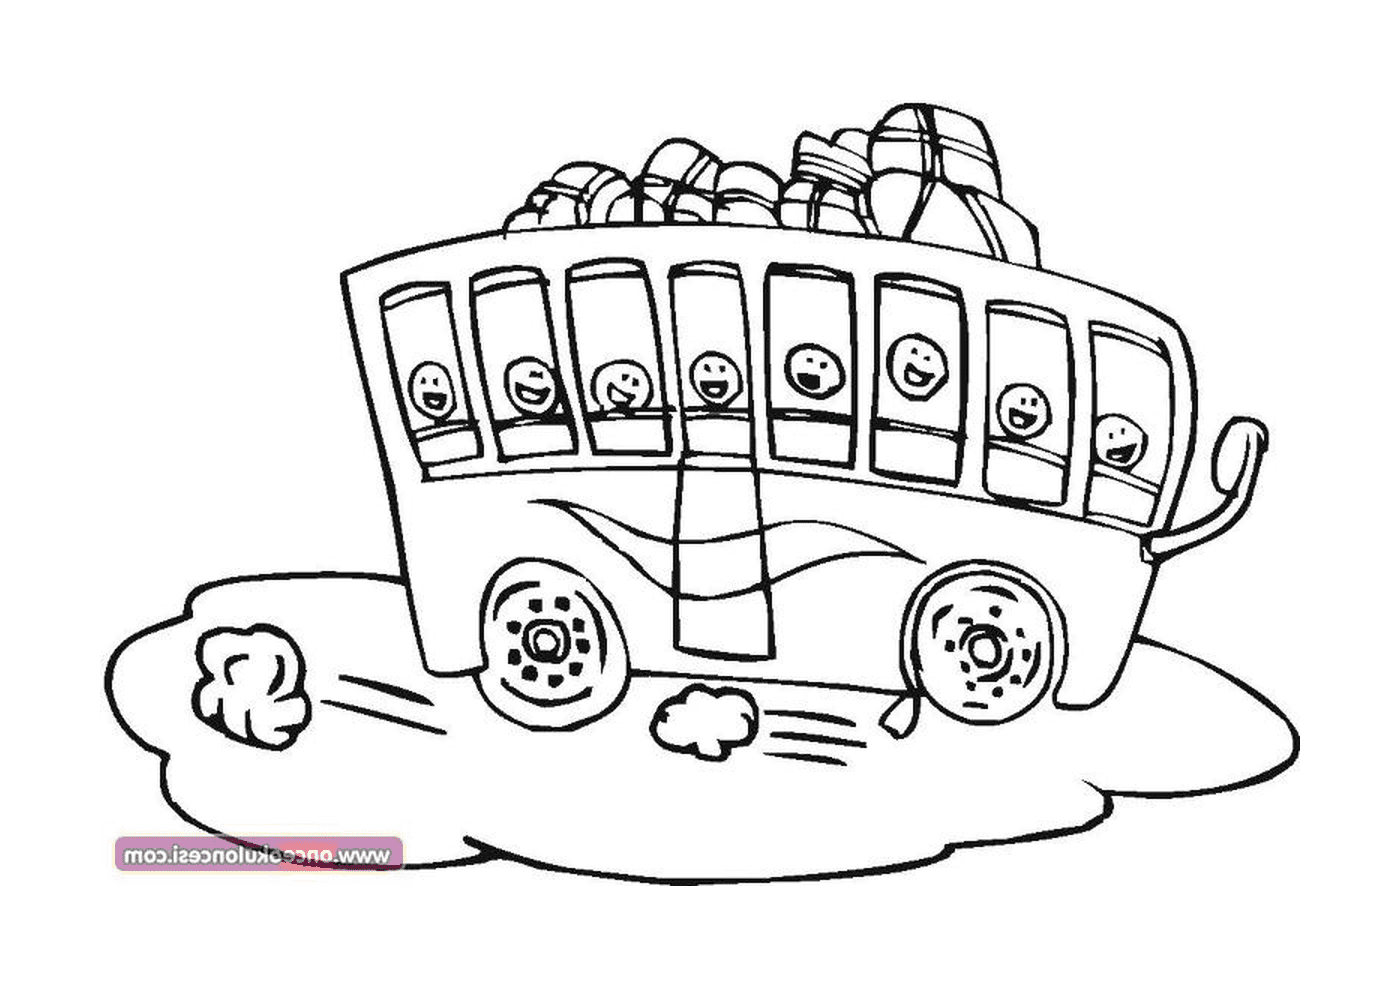  Ein Bus mit vielen Gesichtern auf sie gezeichnet 